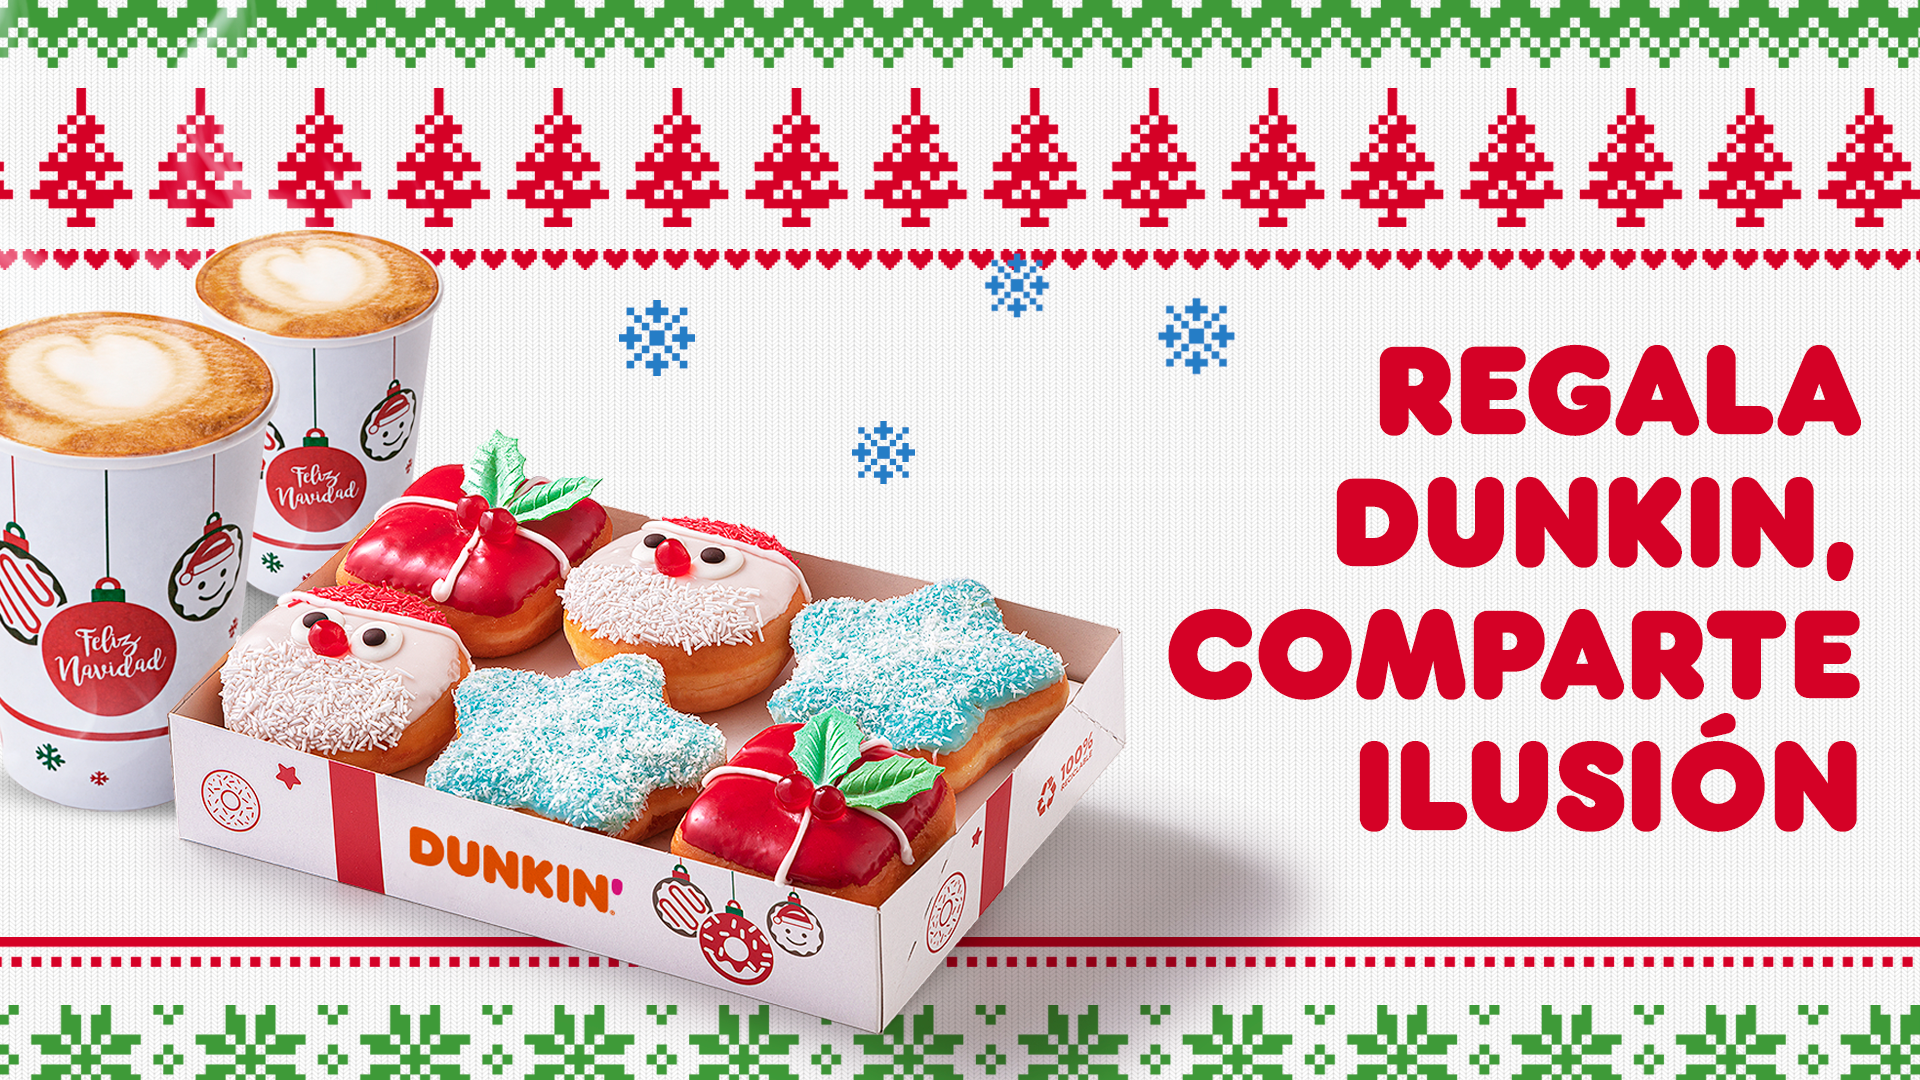 Esta Navidad, regala Dunkin’, comparte ilusión